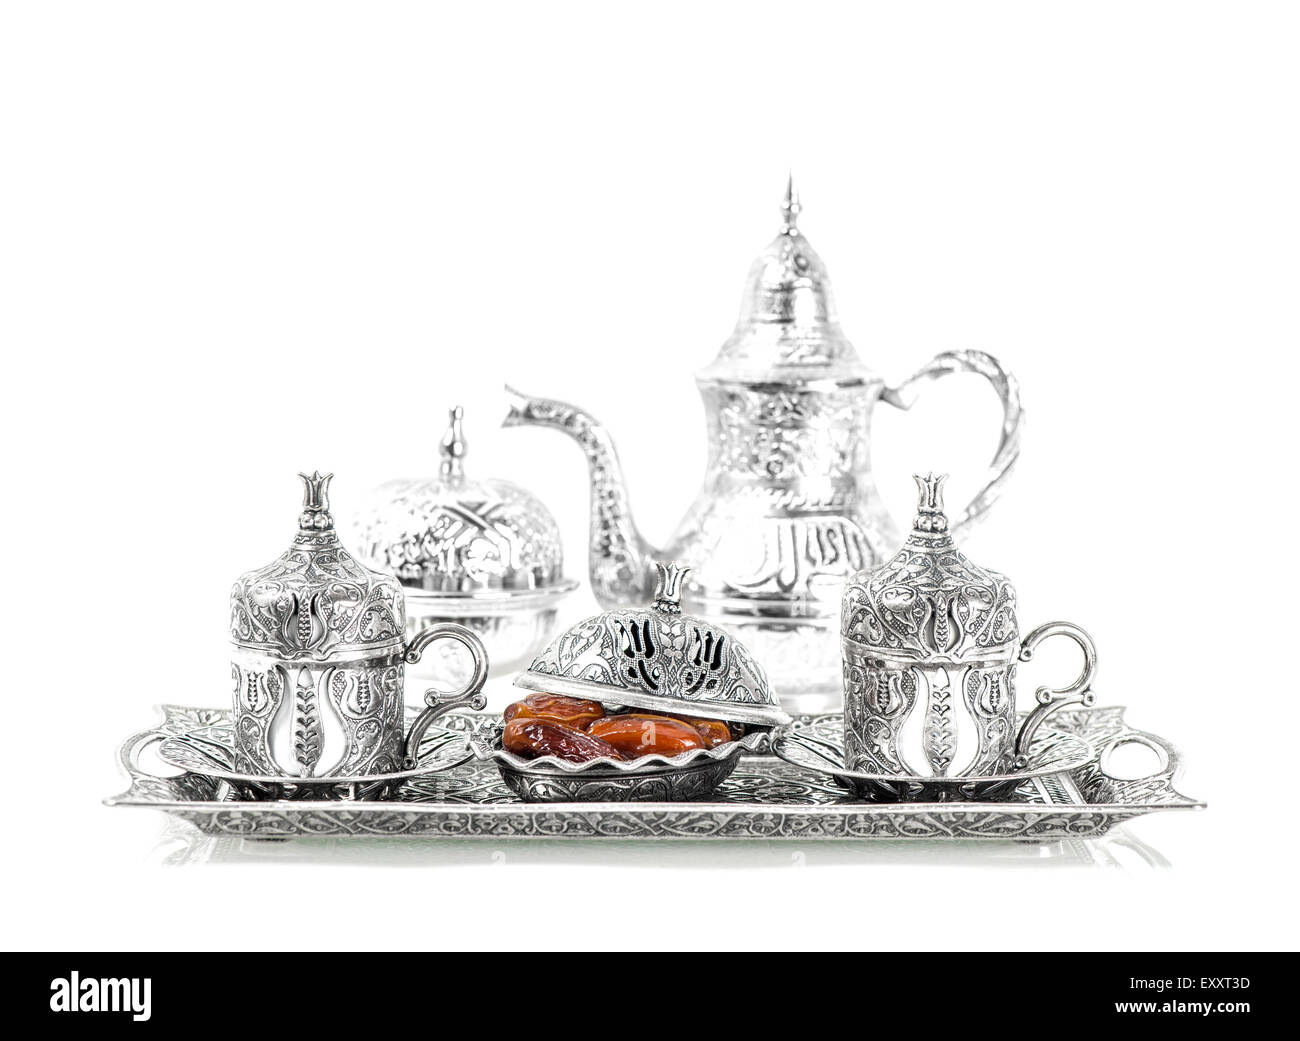 Tischdekoration mit Silbergeschirr und Termine. Orientalische Gastfreundschaft Konzept mit Tee oder Kaffee Tassen Stockfoto